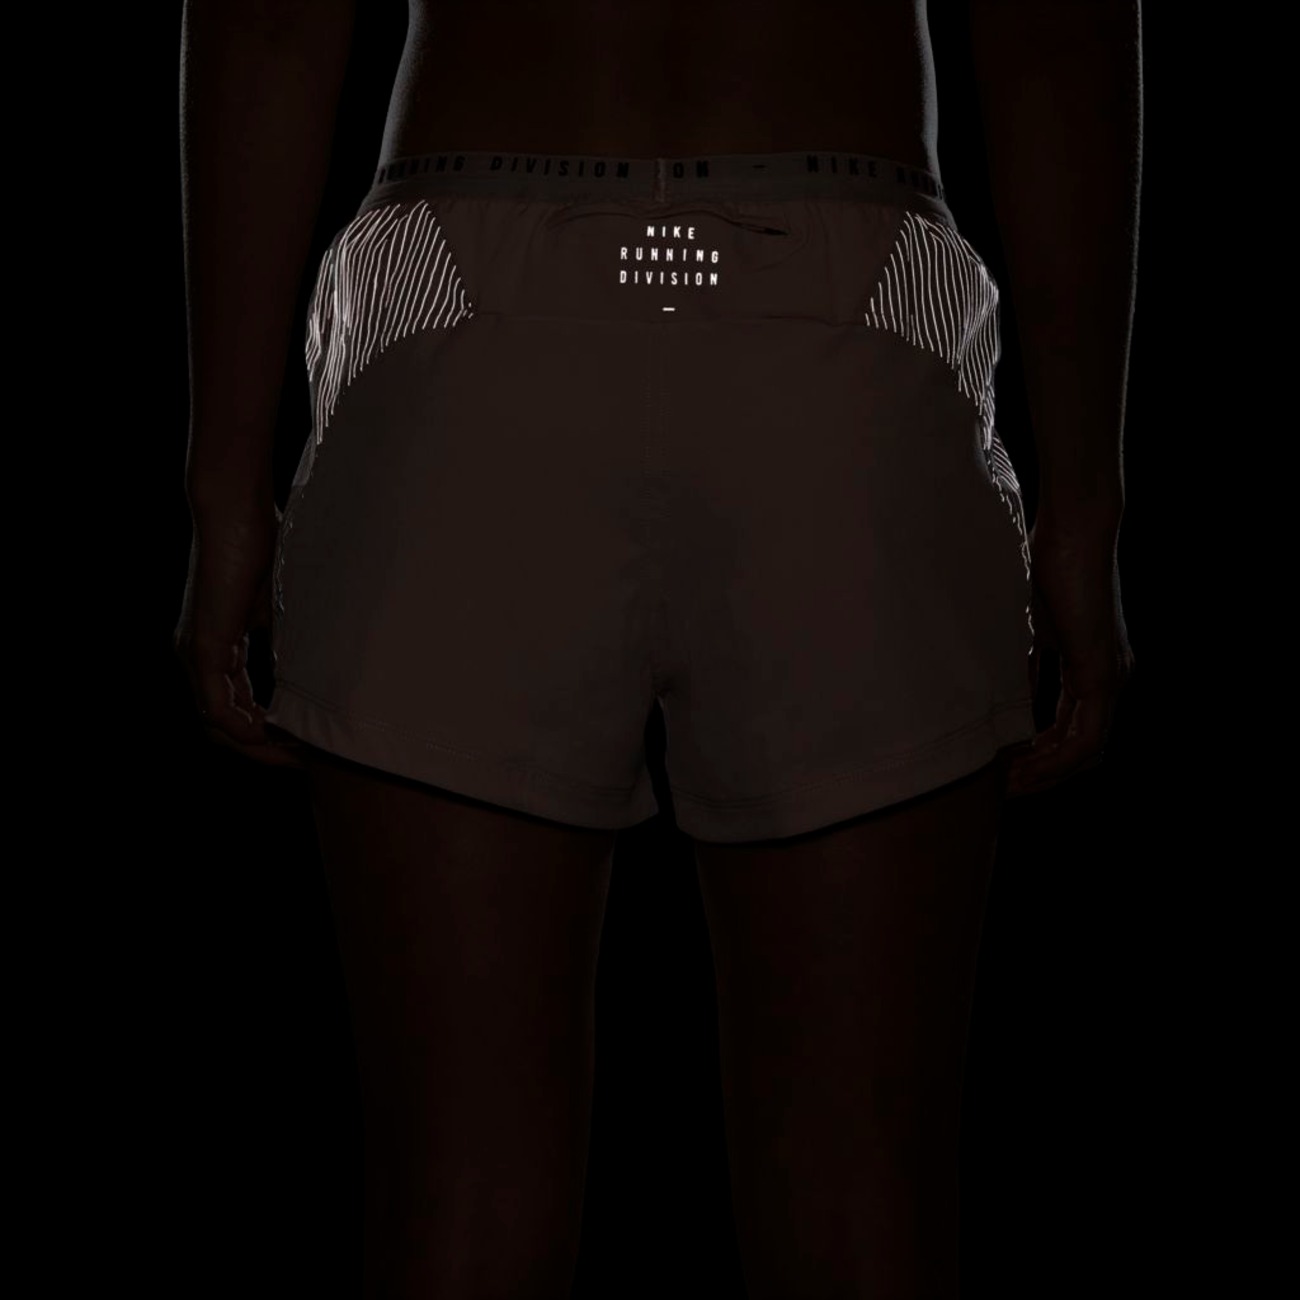 Shorts Nike Dri-FIT Run Division Tempo Luxe Feminino - Foto 9